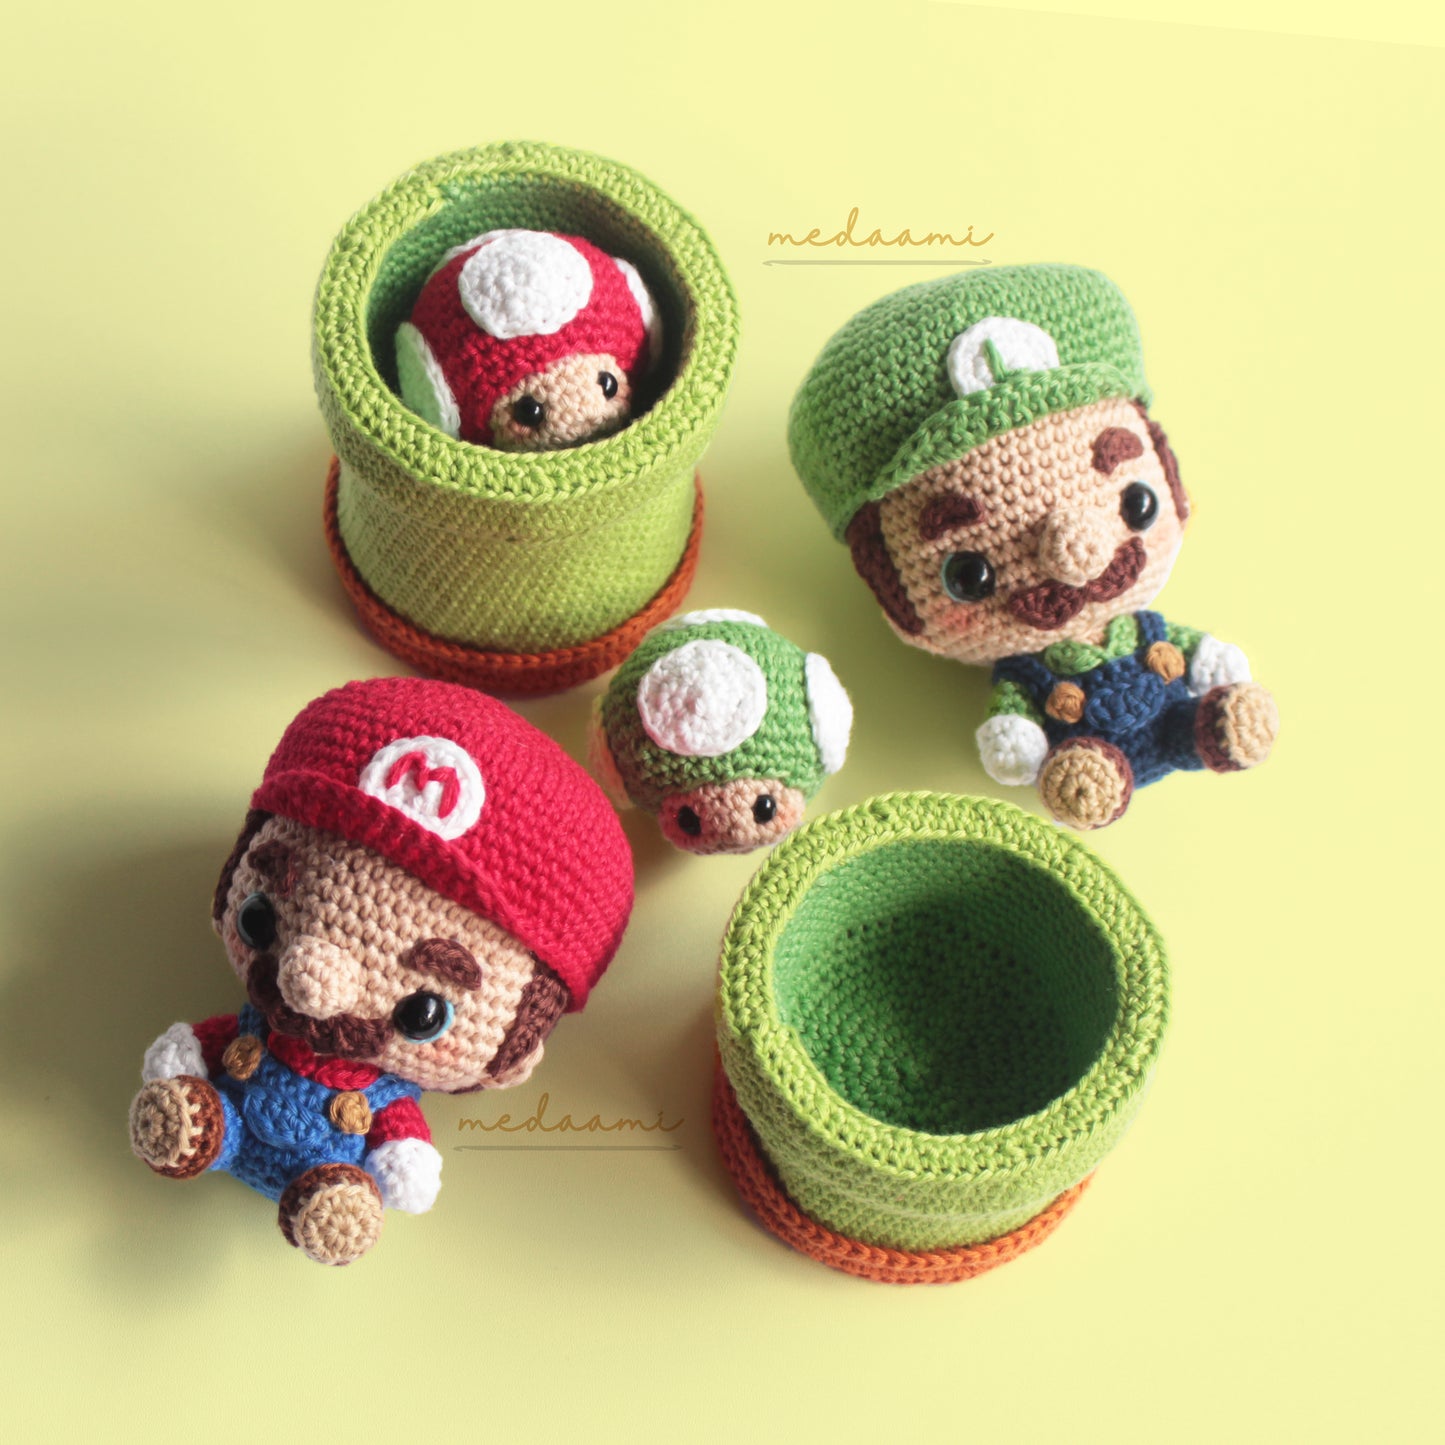 Mario & Luigi Amigurumi Pattern